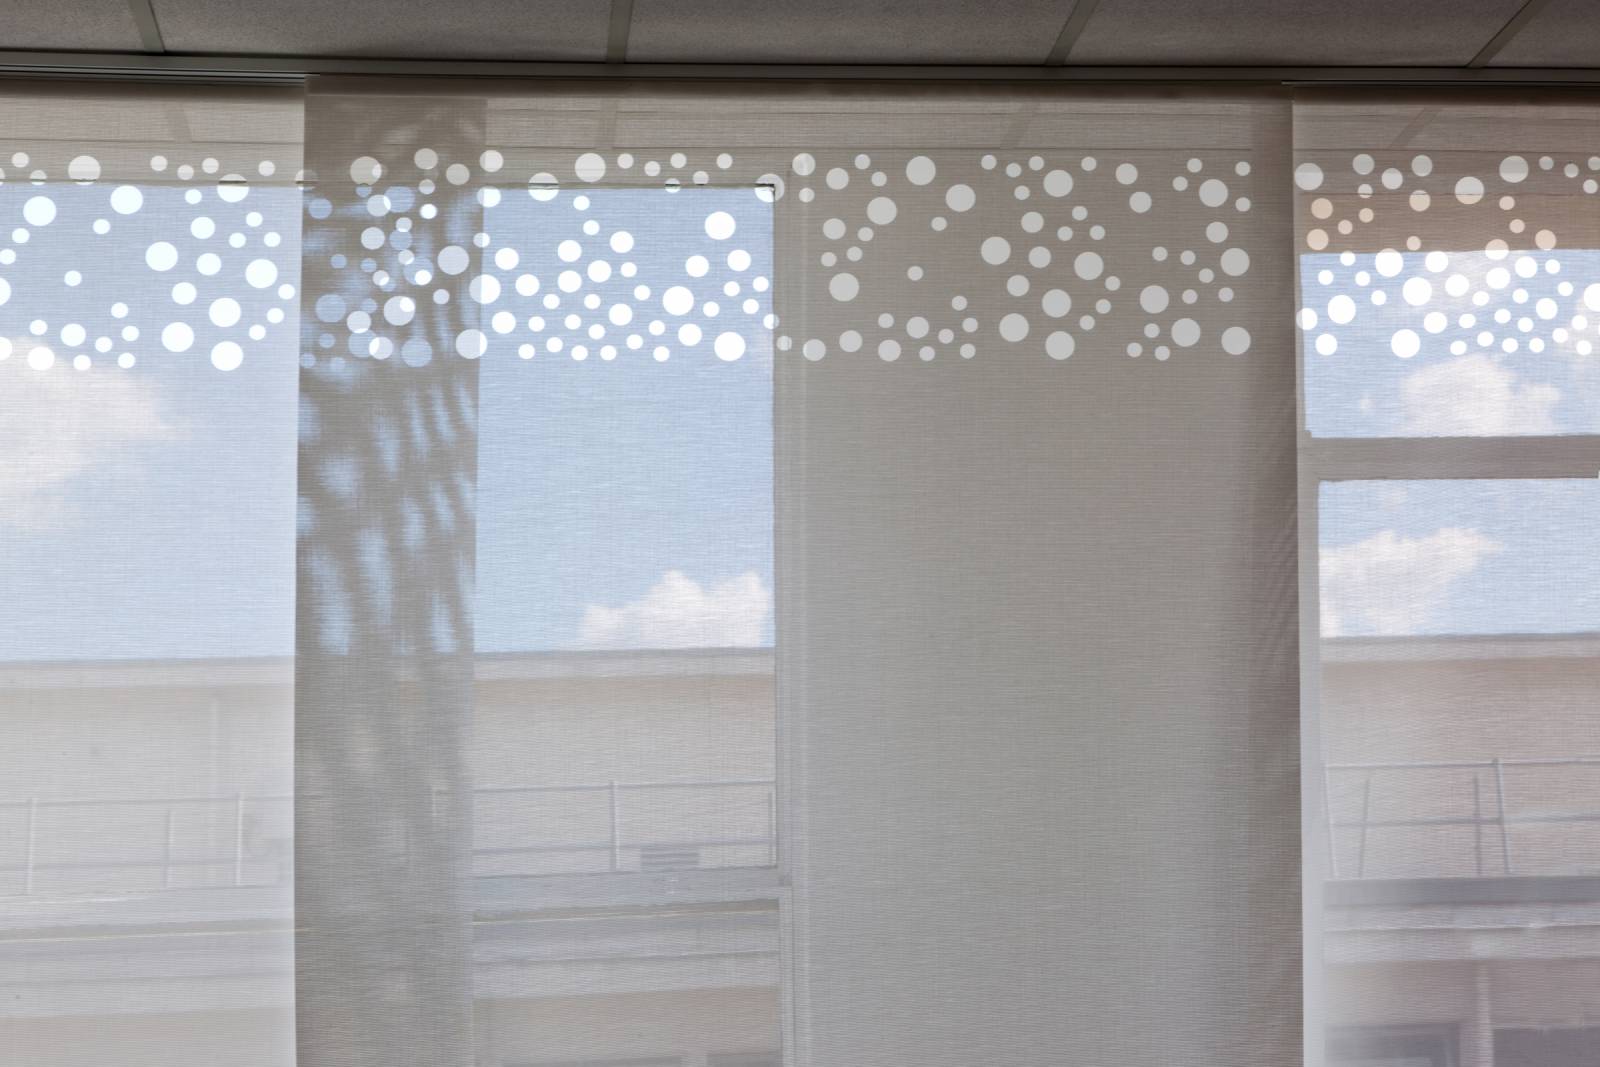 Panneaux japonais écrans solaires "Bulles de savon" : bureau de direction - Paris - 3